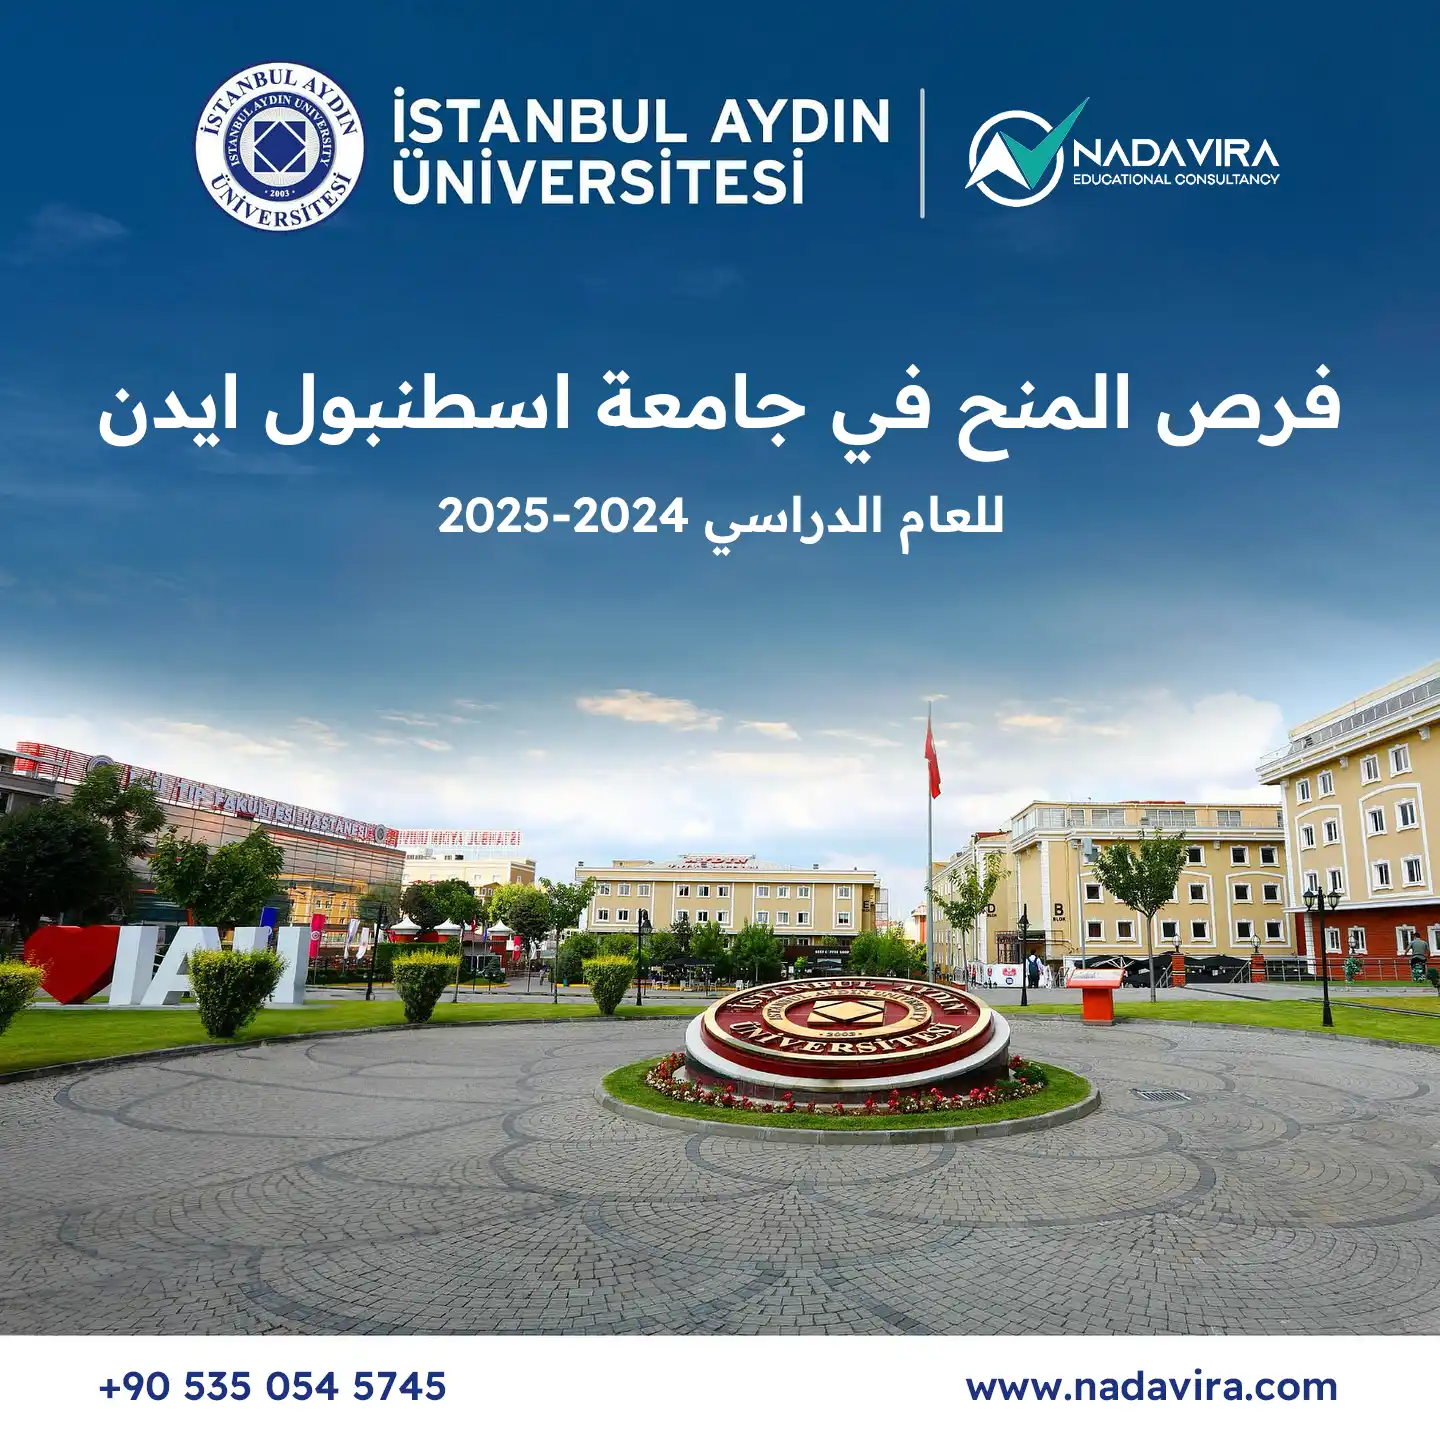 فرص المنح في جامعة اسطنبول ايدن للعام الدراسي 2024-2025